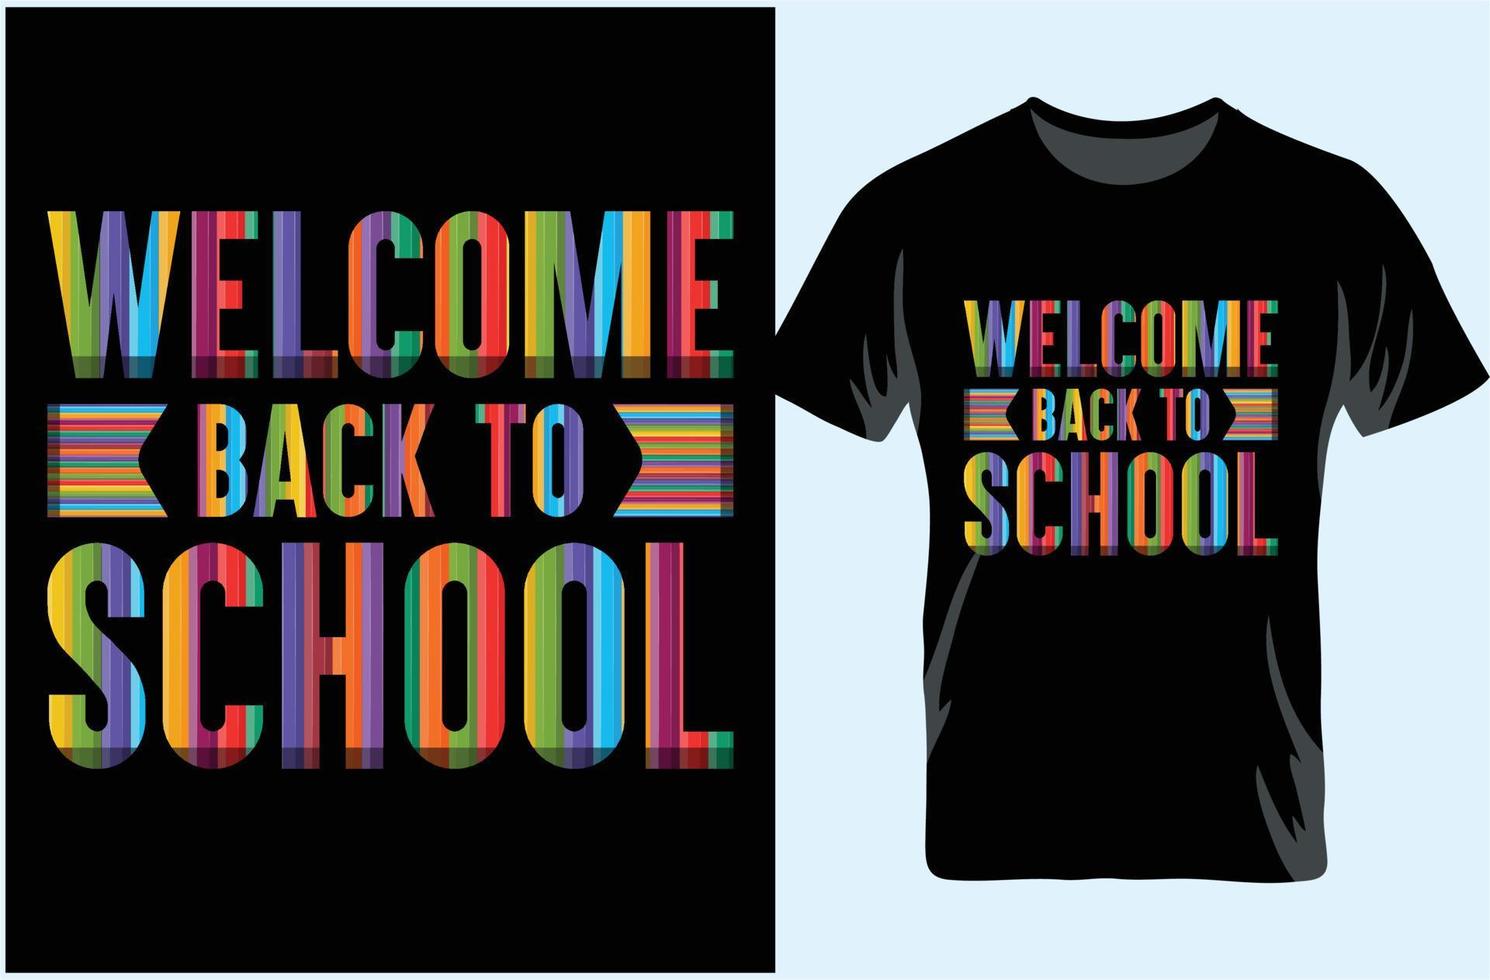 willkommen zurück im schultypografie-t-shirt-design. erster Schultag. Willkommen zurück in der Schule, schönes Typografie-T-Shirt. vektor